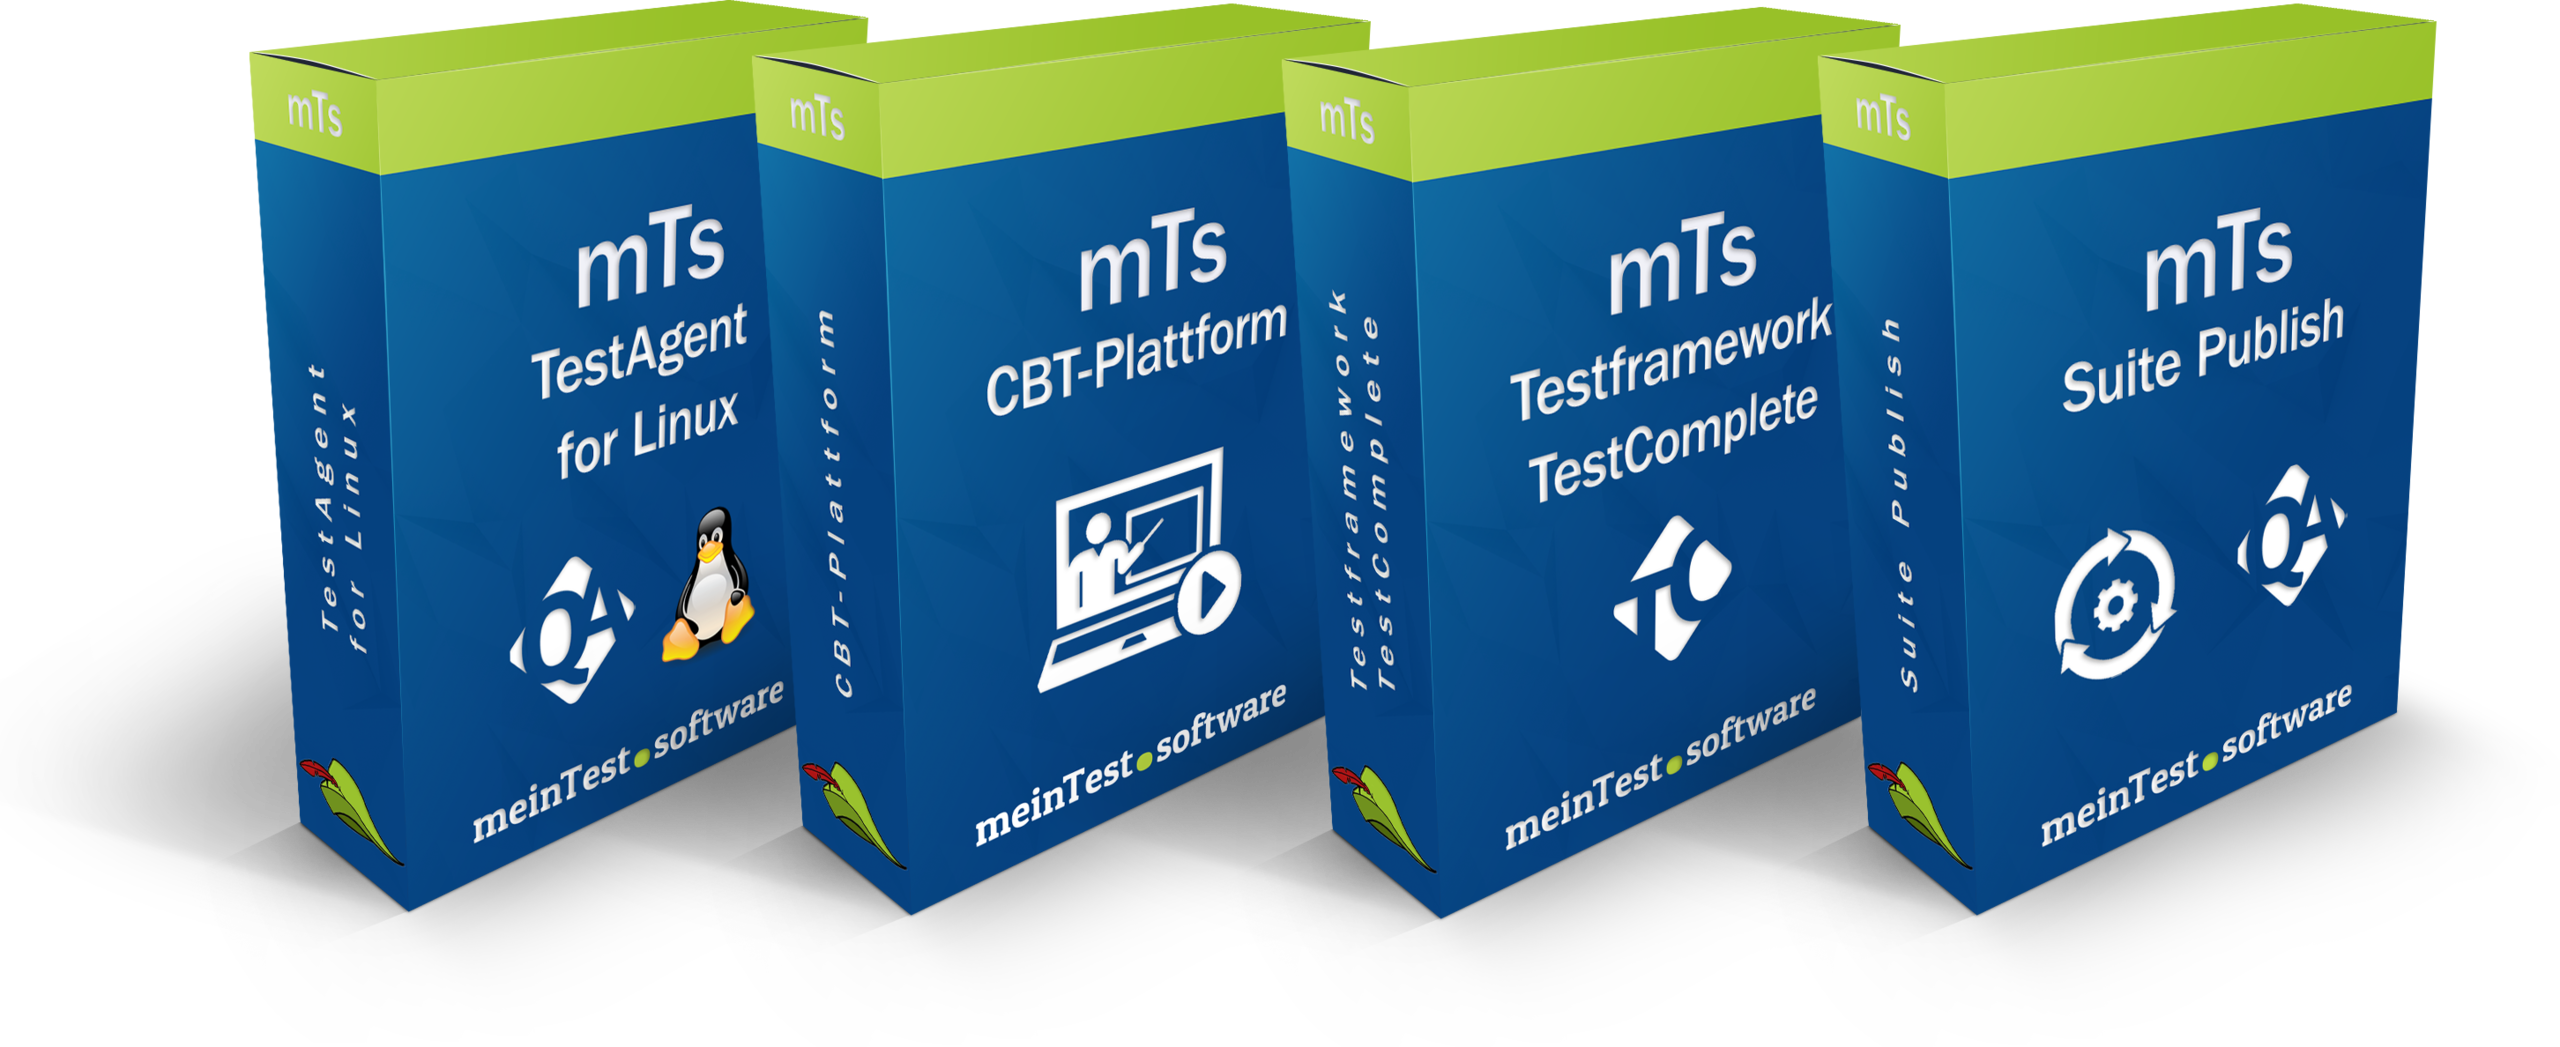 Die Produkte TestAgent 4 Linux, CBT-Plattform, Testframework für TestComplete und Suite Publish mit ihrer zugehörigen Produktebox